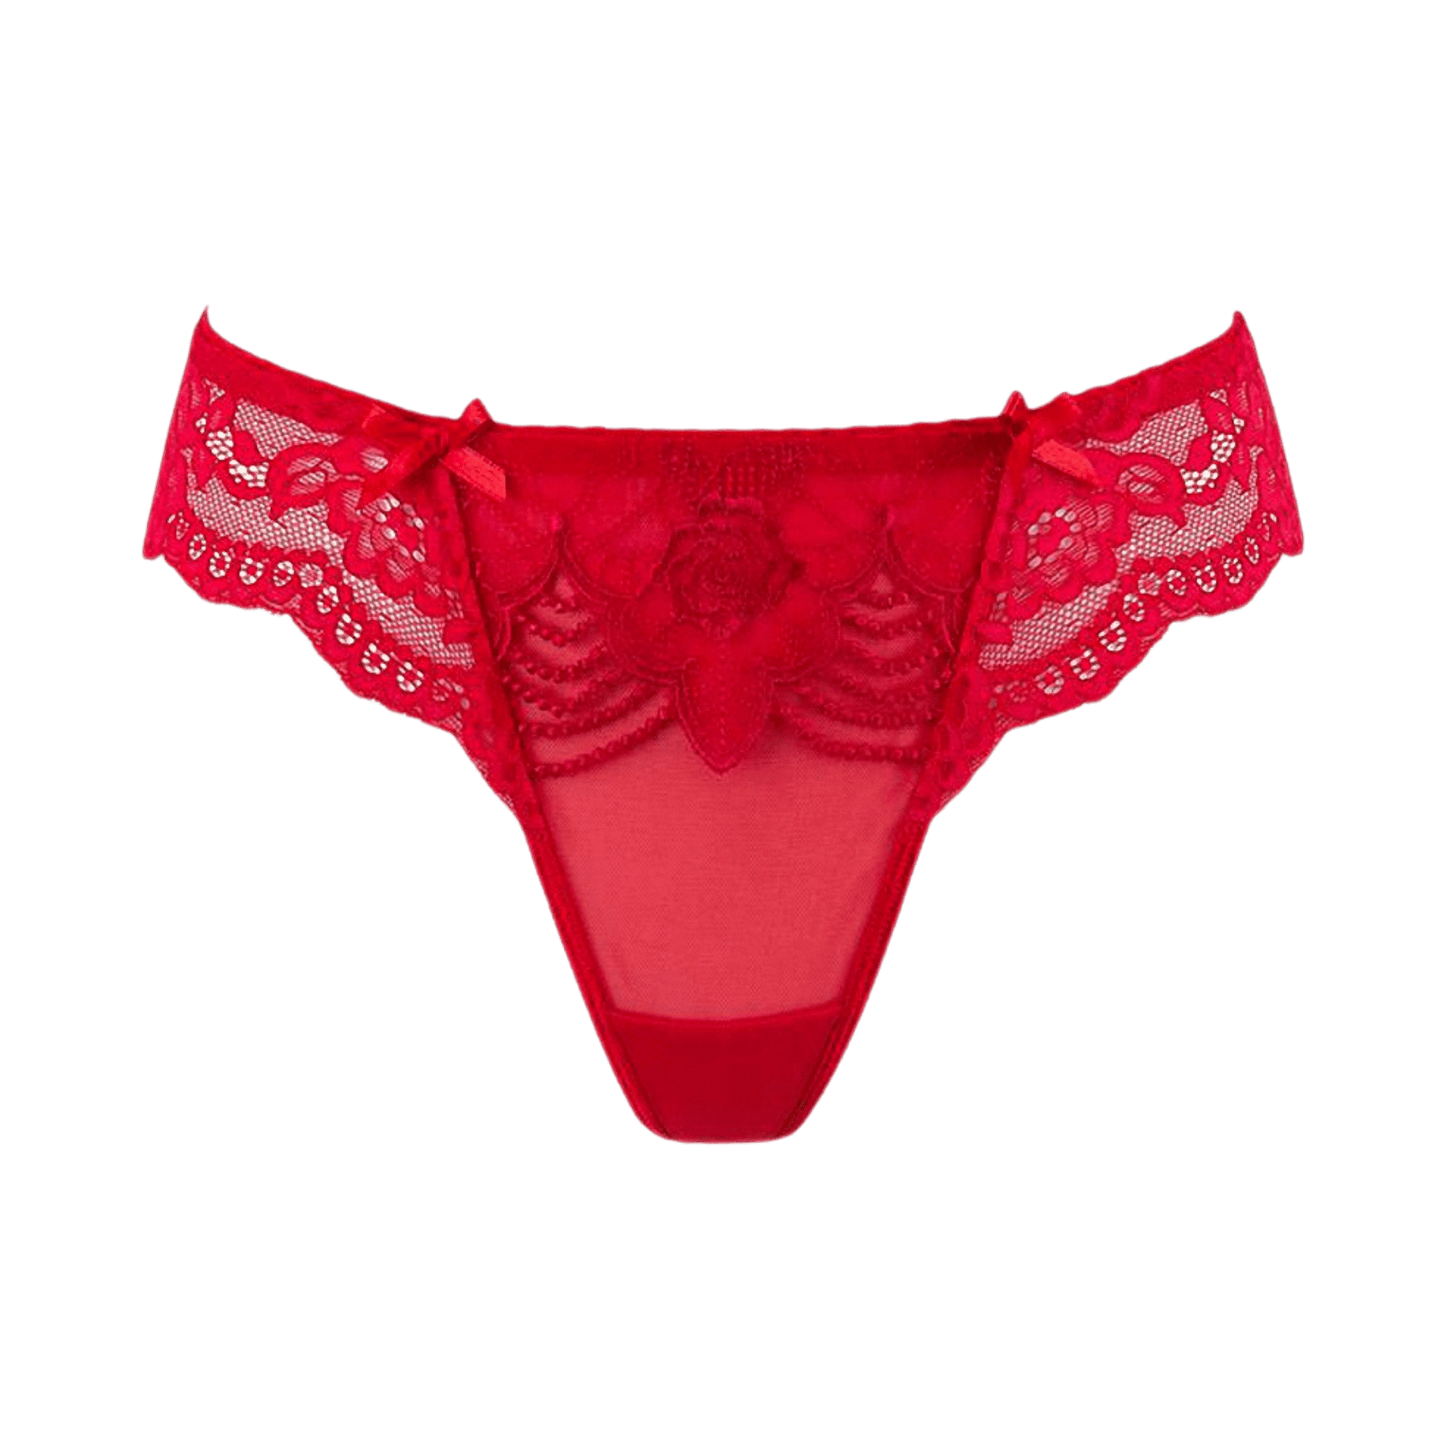 String brésilien rouge V-9698 de Axami chez Oh My God'Z avec détails en dentelle luxueuse, parfait pour ajouter une touche d'élégance et de séduction à votre garde-robe intime.